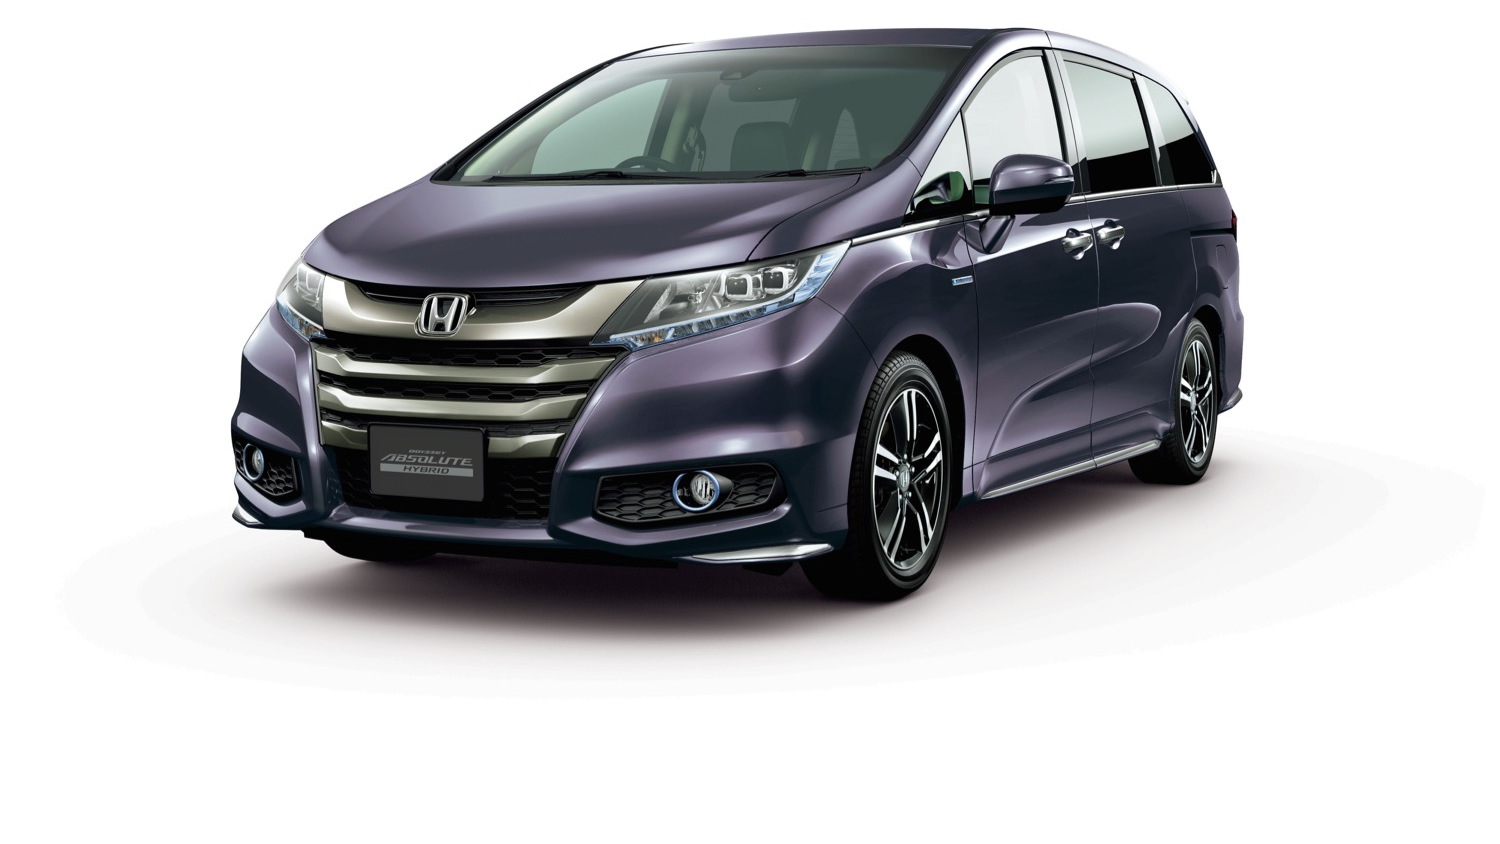 Honda Odyssey Hybrid (Japanese model)